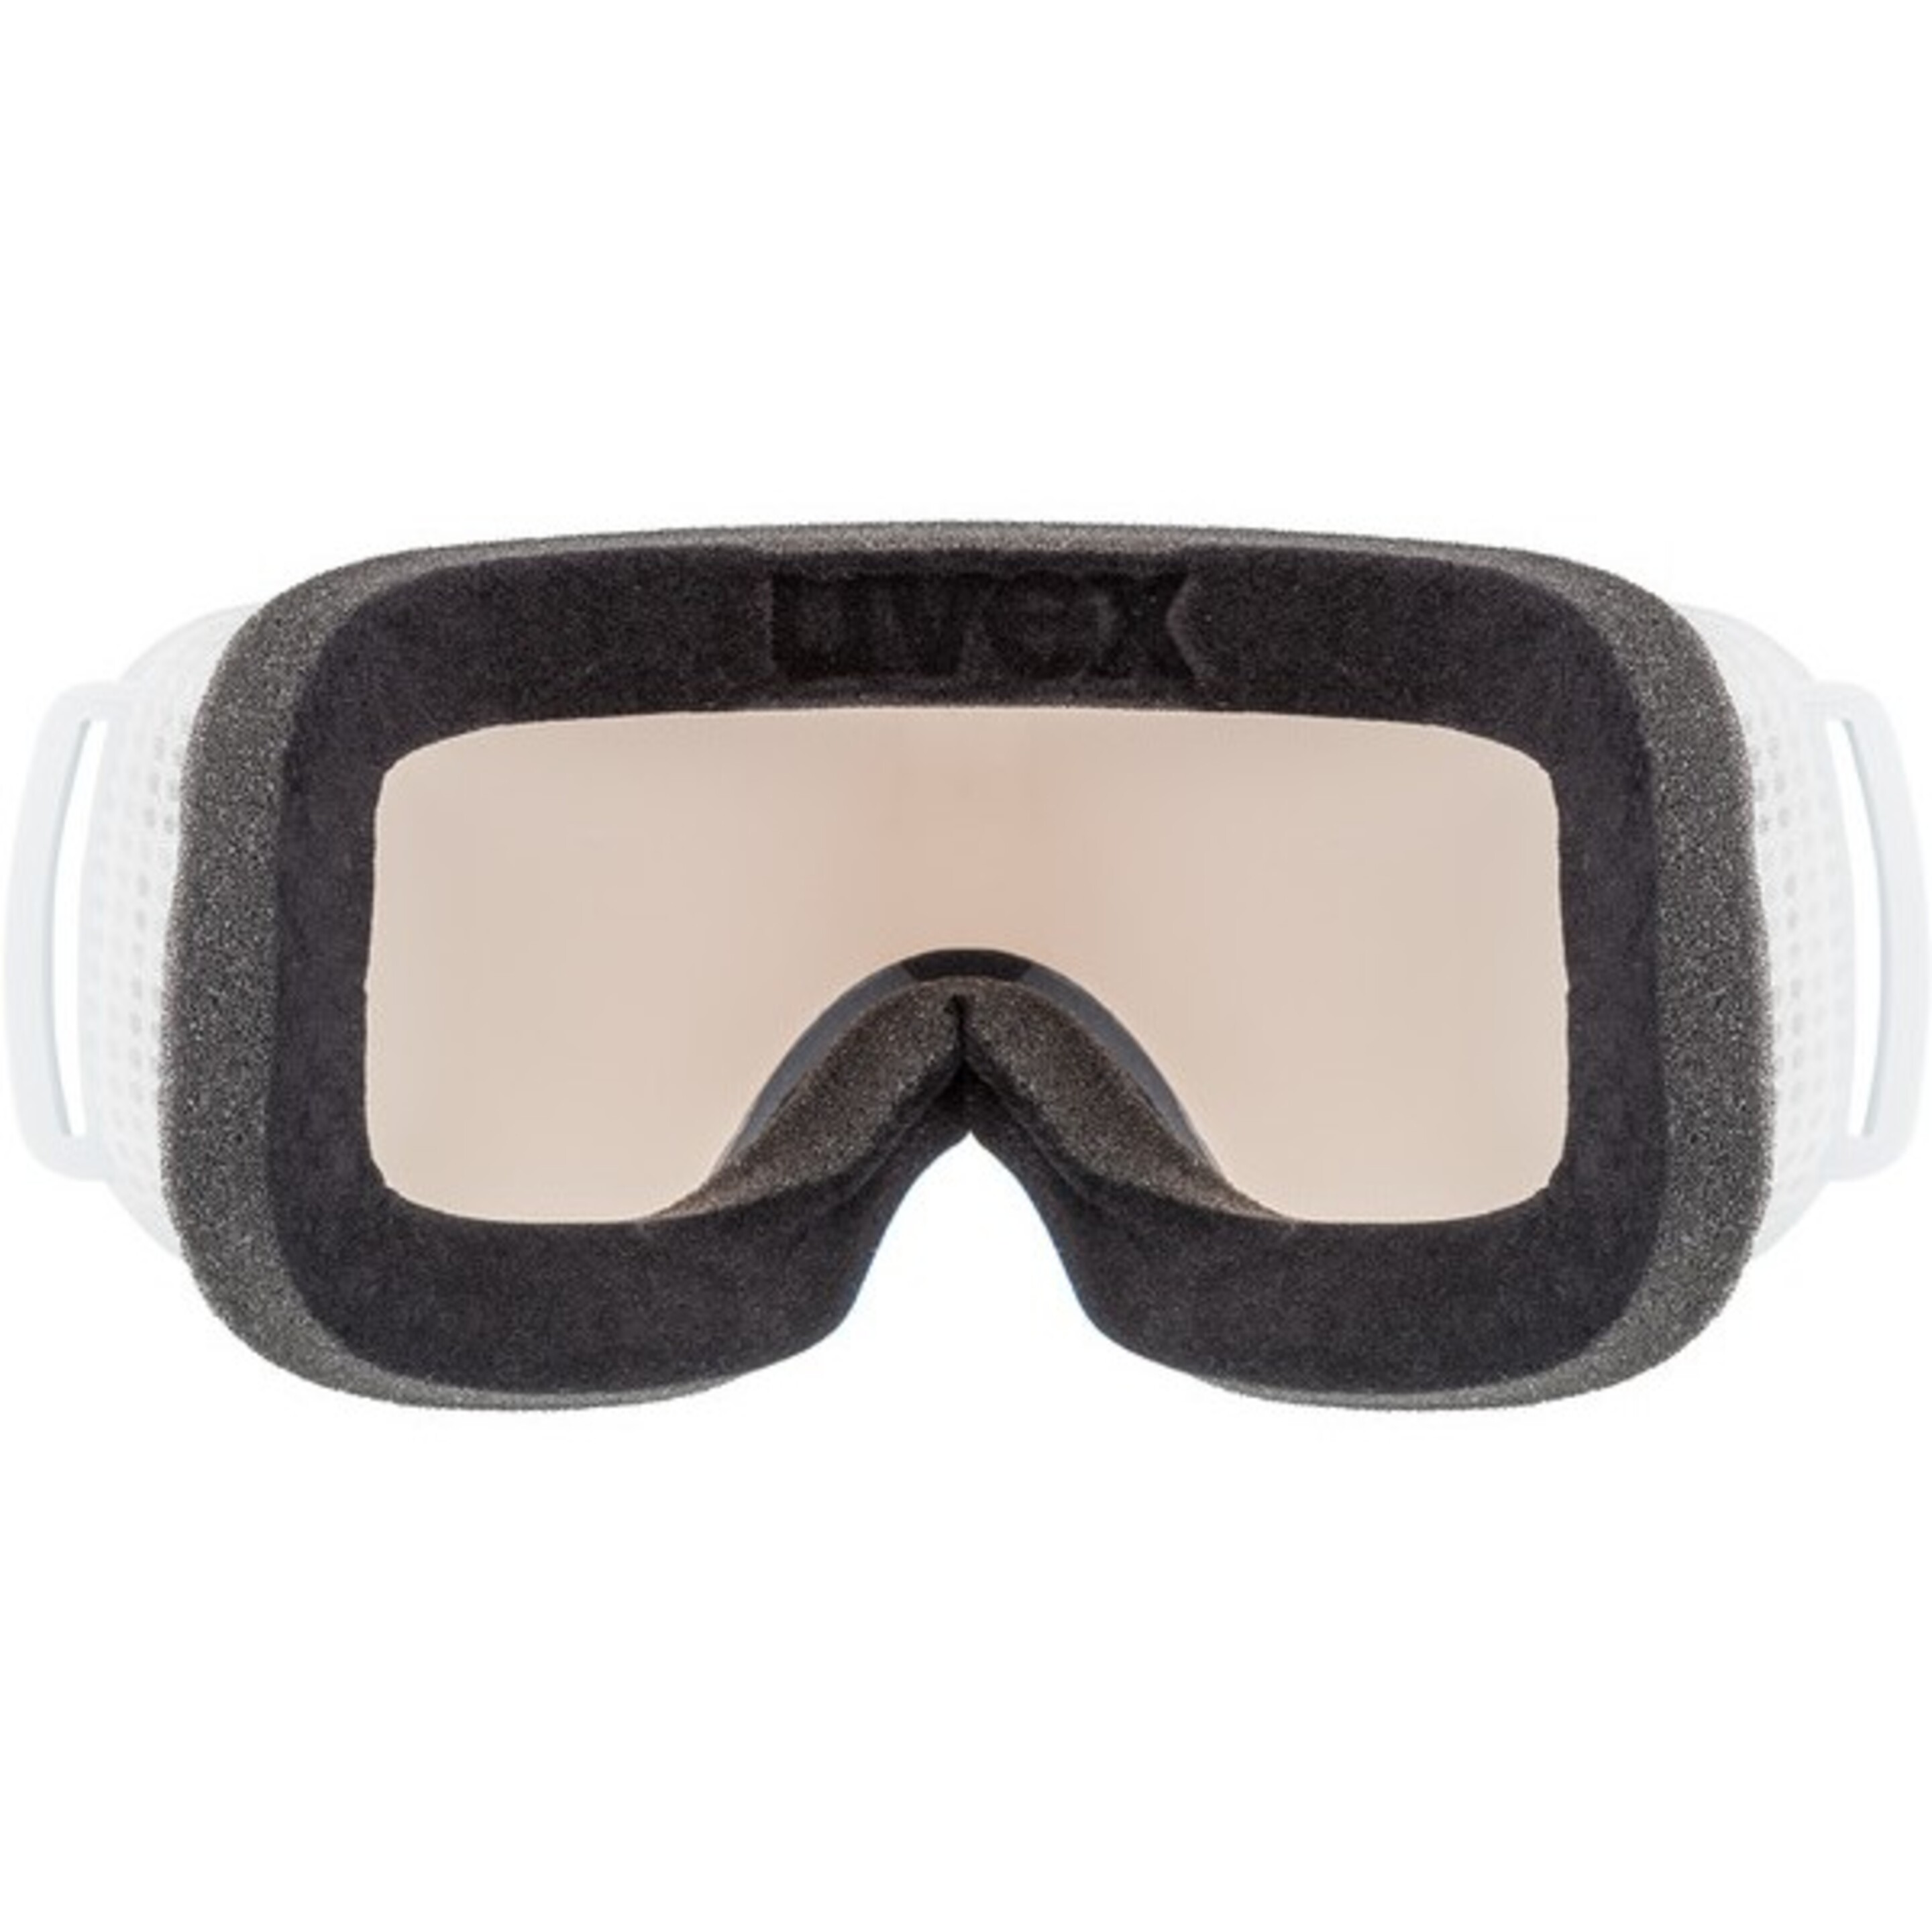 Gafas De Ventisca Uvex Downhill 2000 S V Black Green